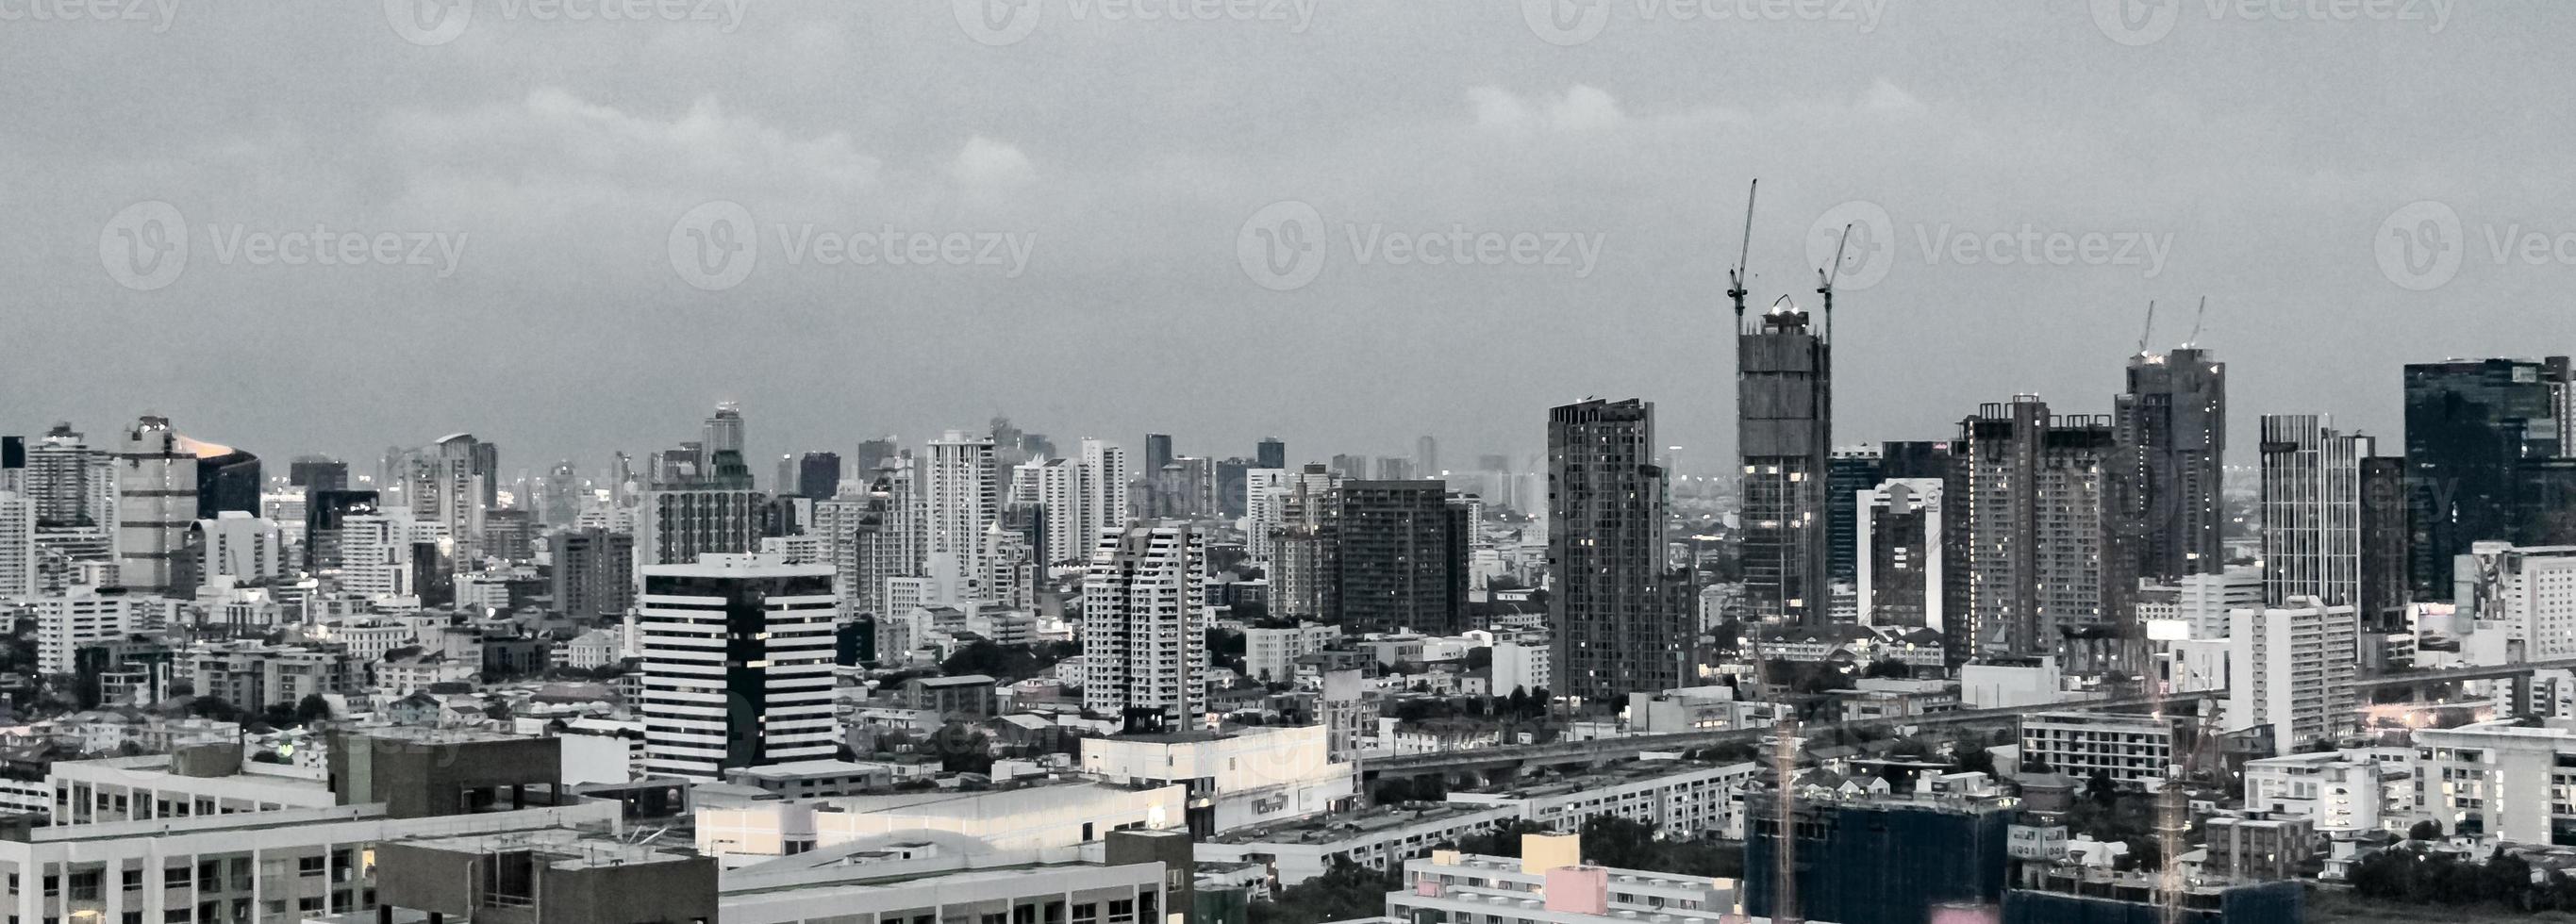 bangkok thailandia città panorama grattacielo paesaggio urbano foto in bianco e nero.